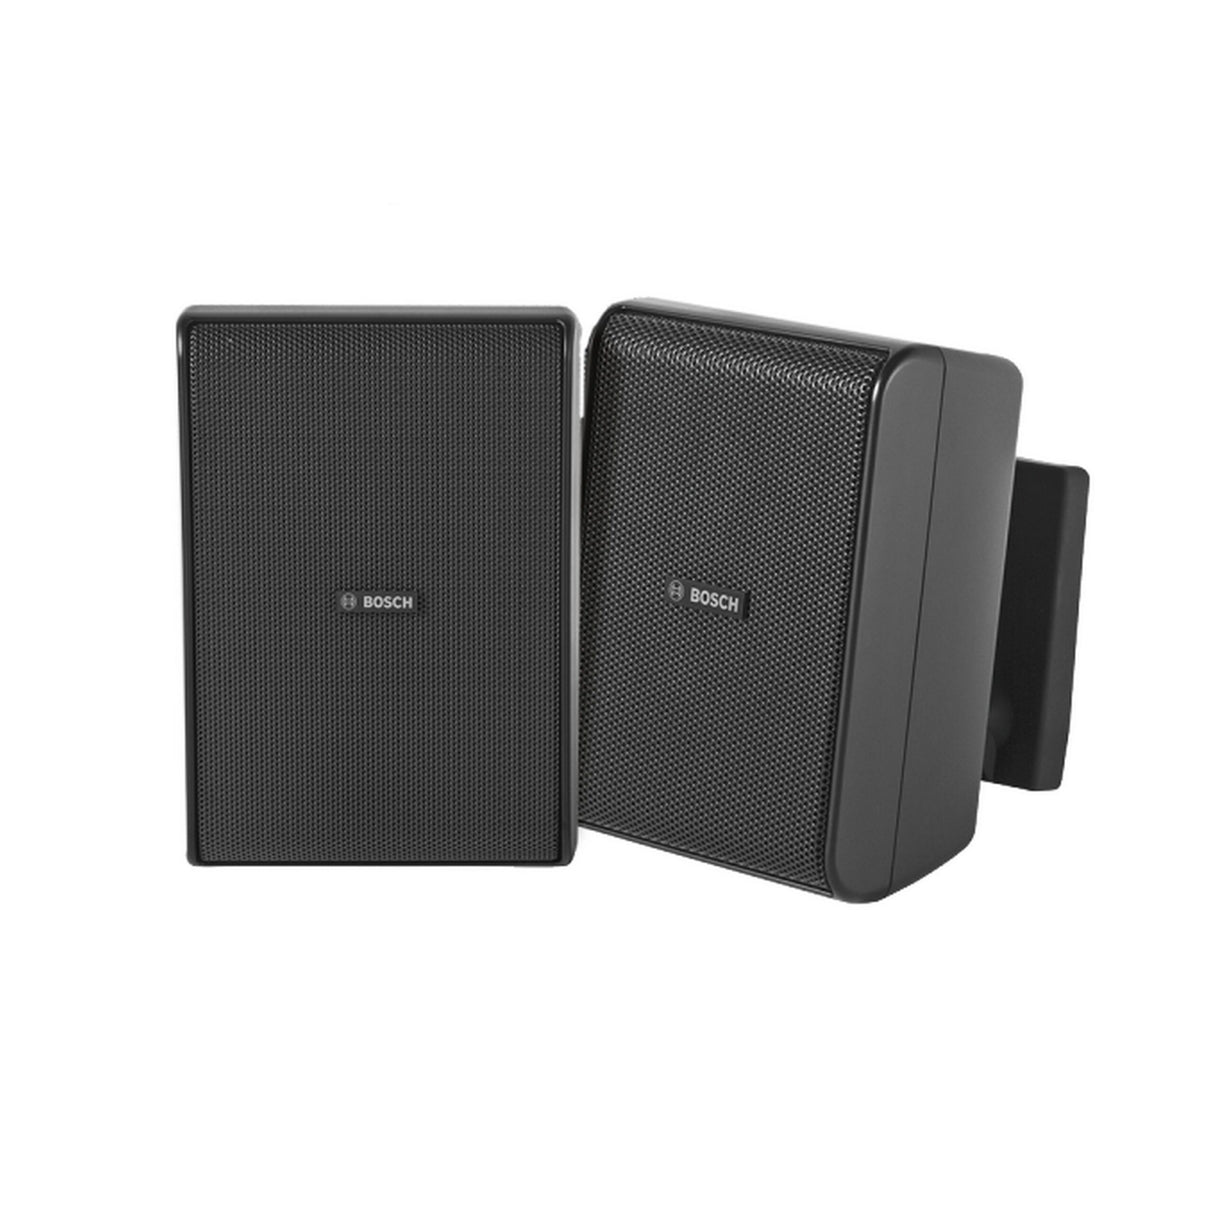 Bosch LB20-PC30-5D 5 Inch 70/100V Quick Install IP54 Speaker, Black